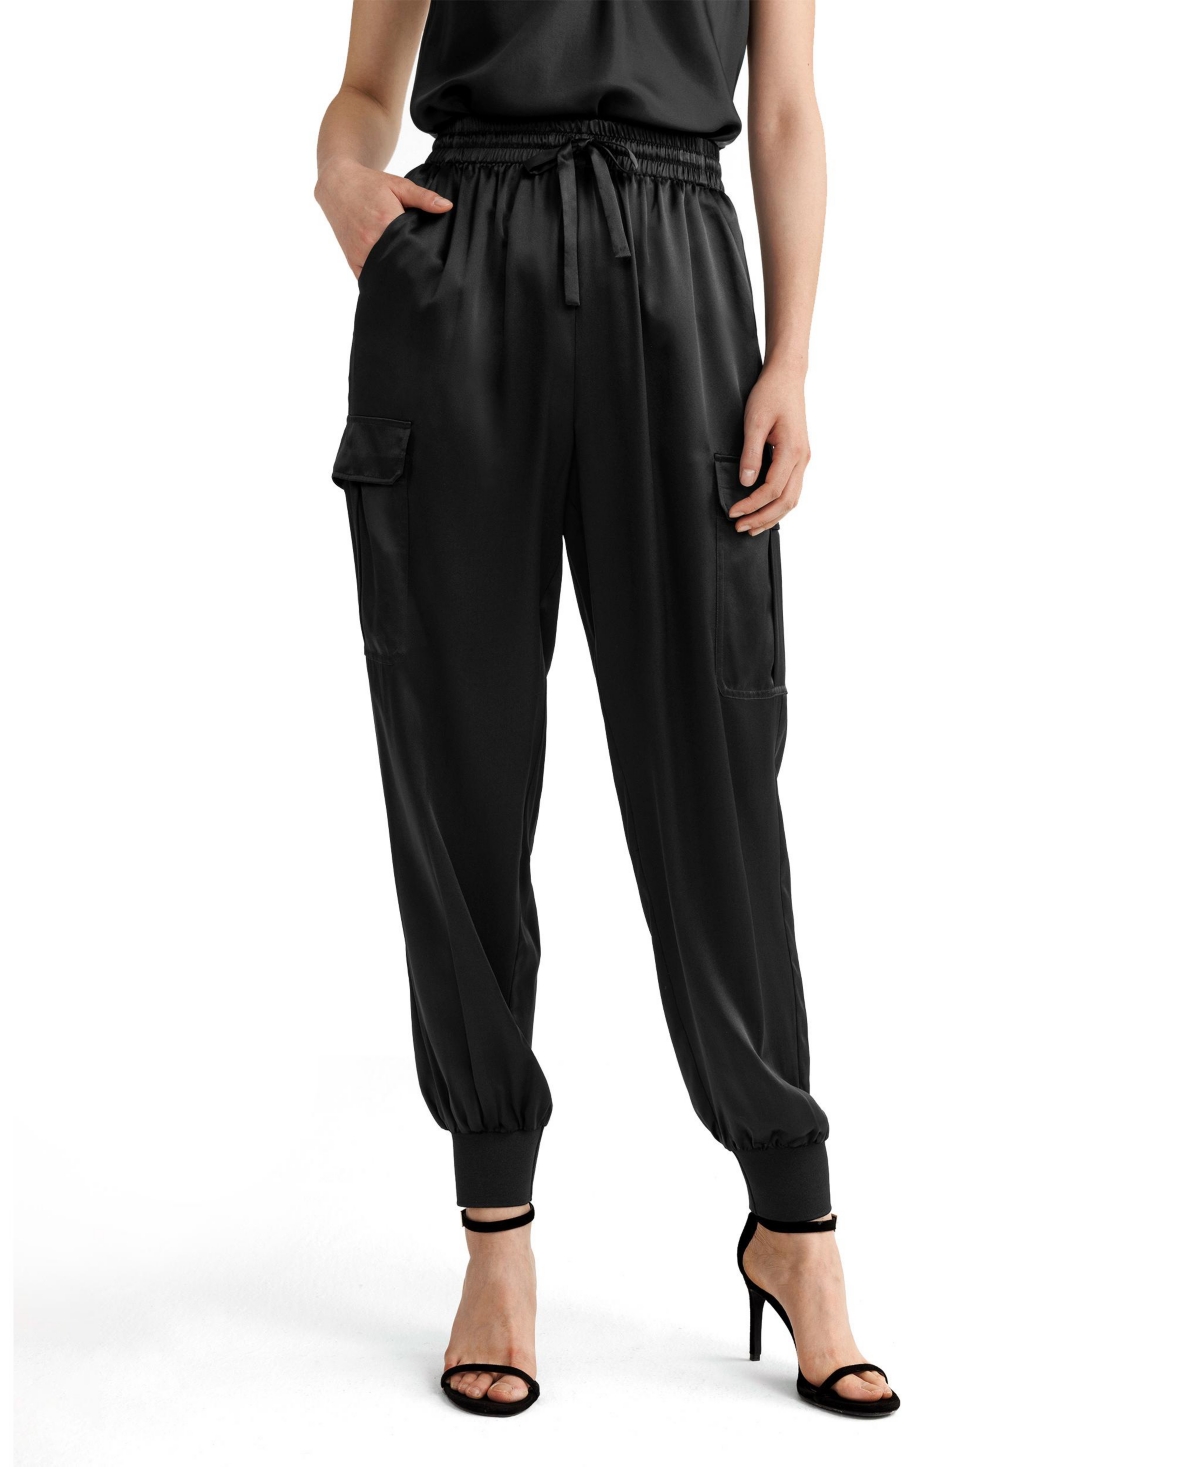 Safari Silk Pants for Women - Black